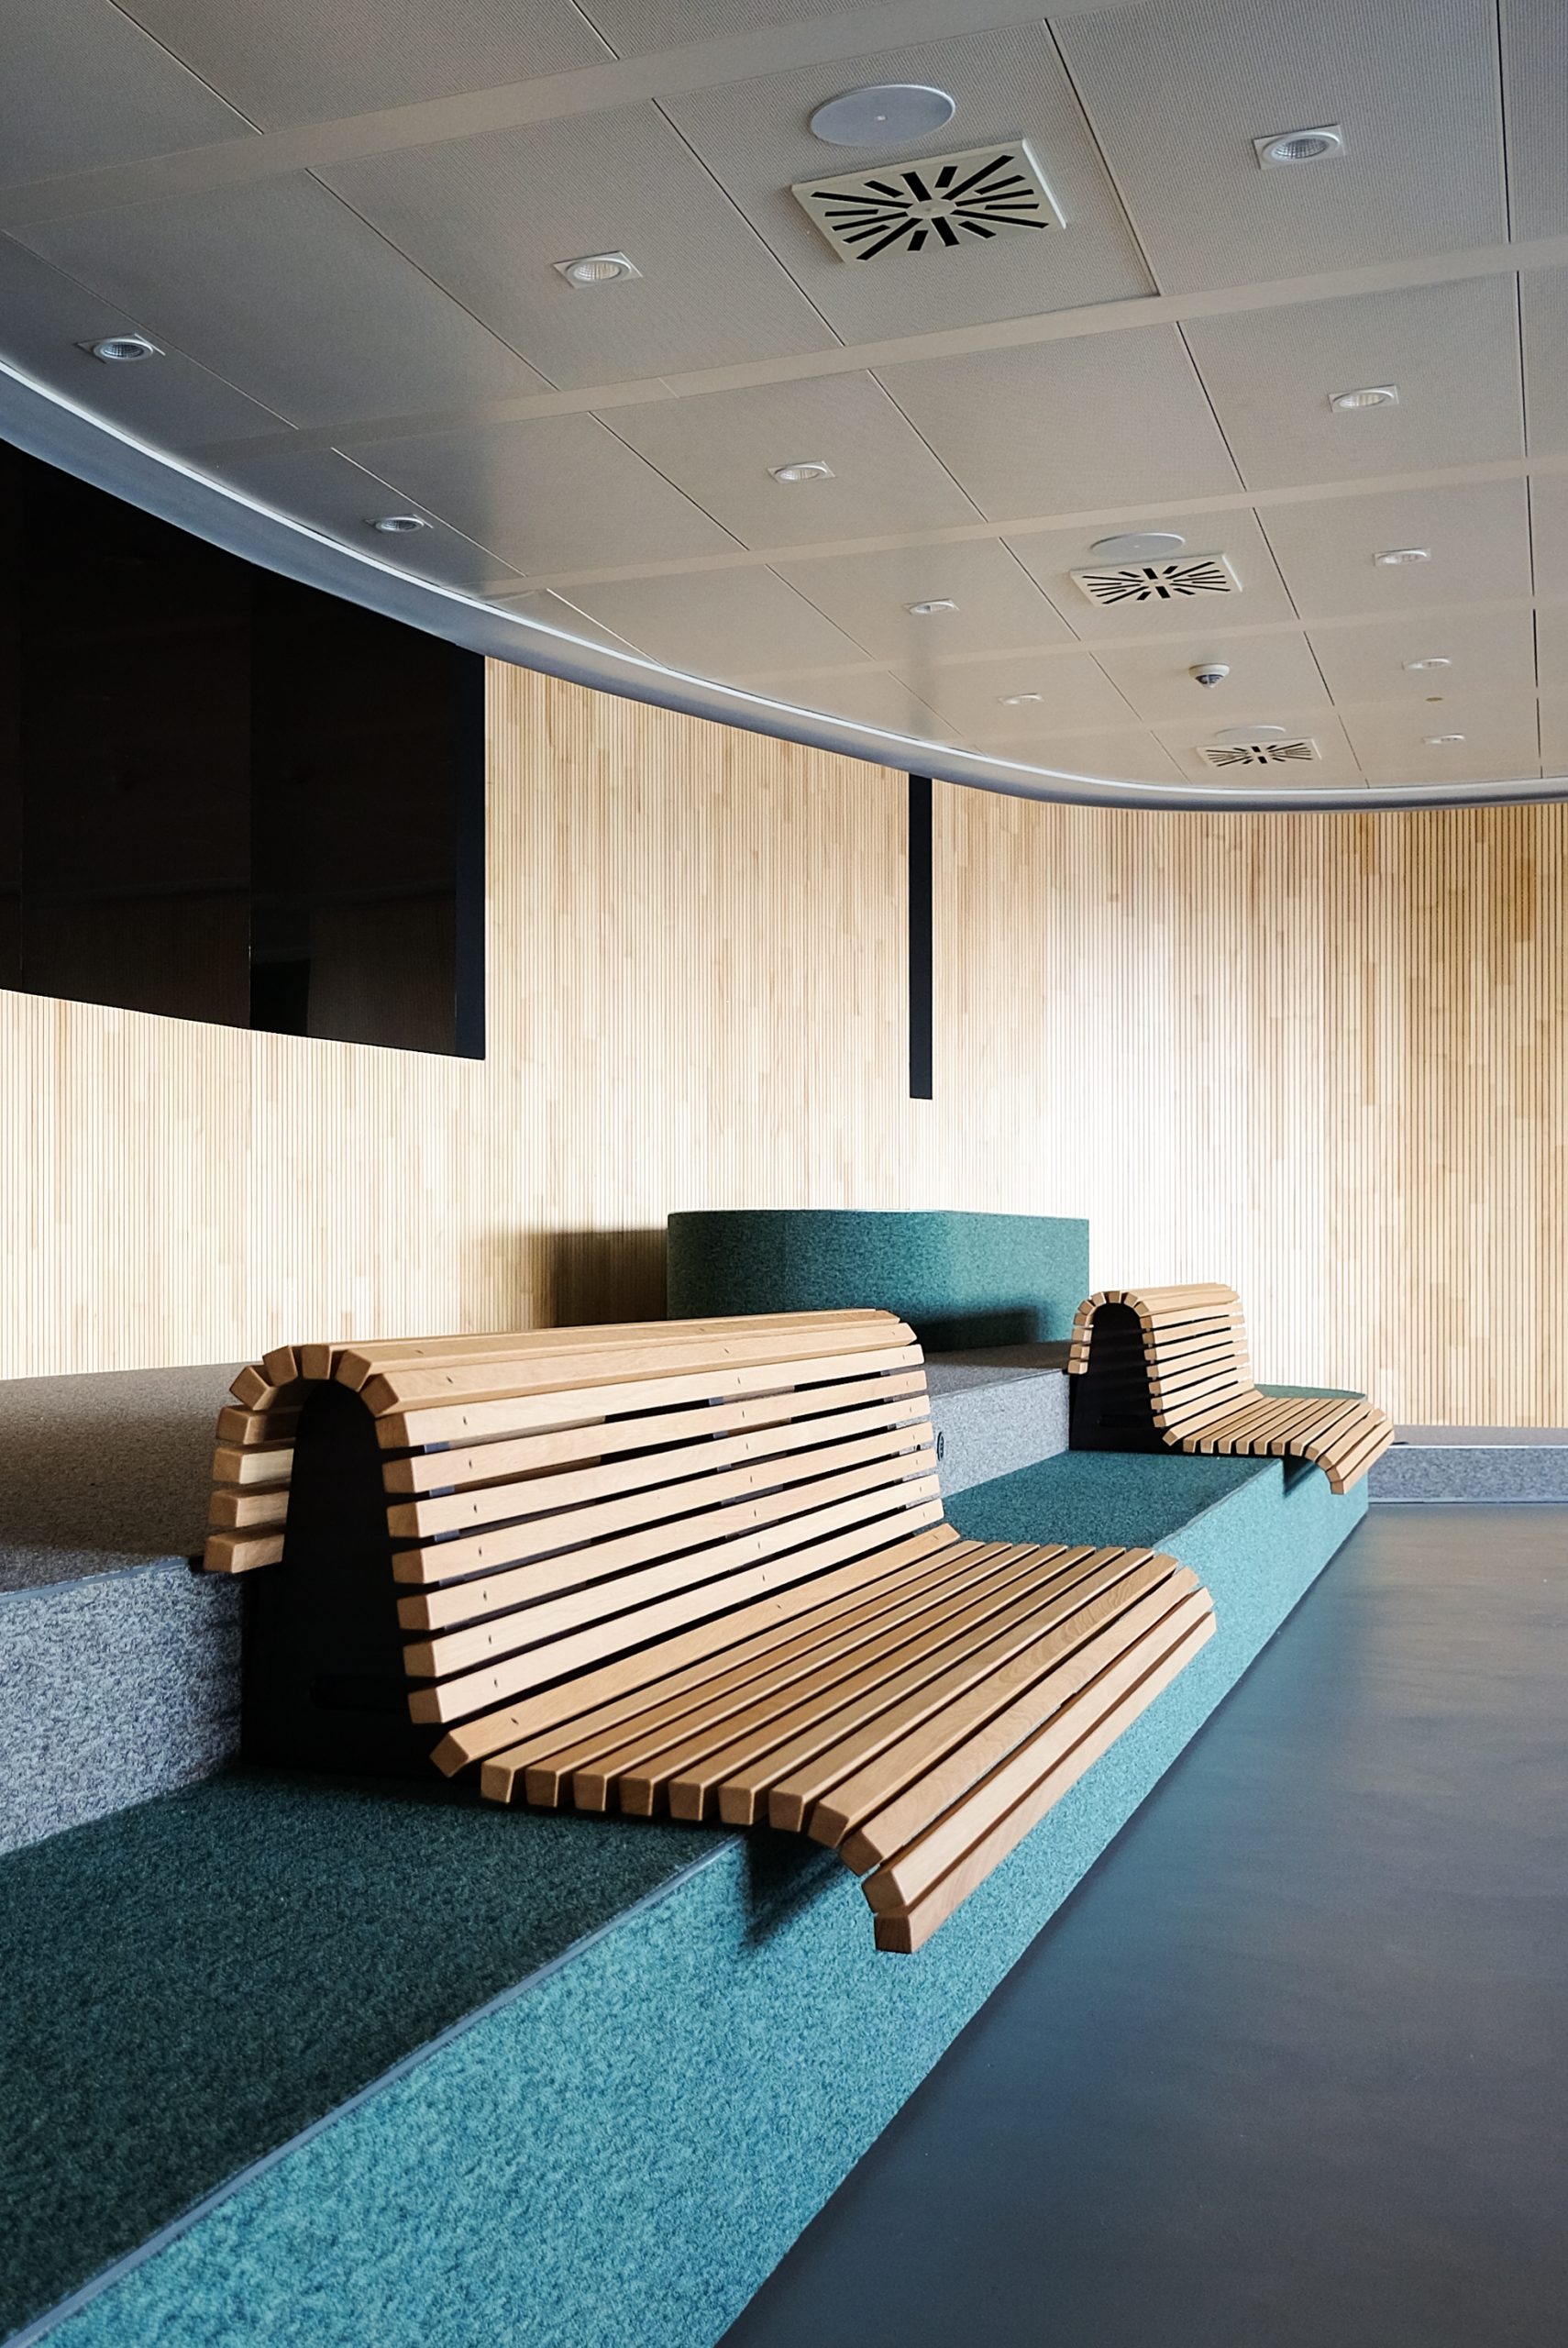 Holzbank mit modernem Design auf einem Möbelstück mit textiler Oberfläche im Besprechungsraum der Conosrsbank in Nürnberg. 